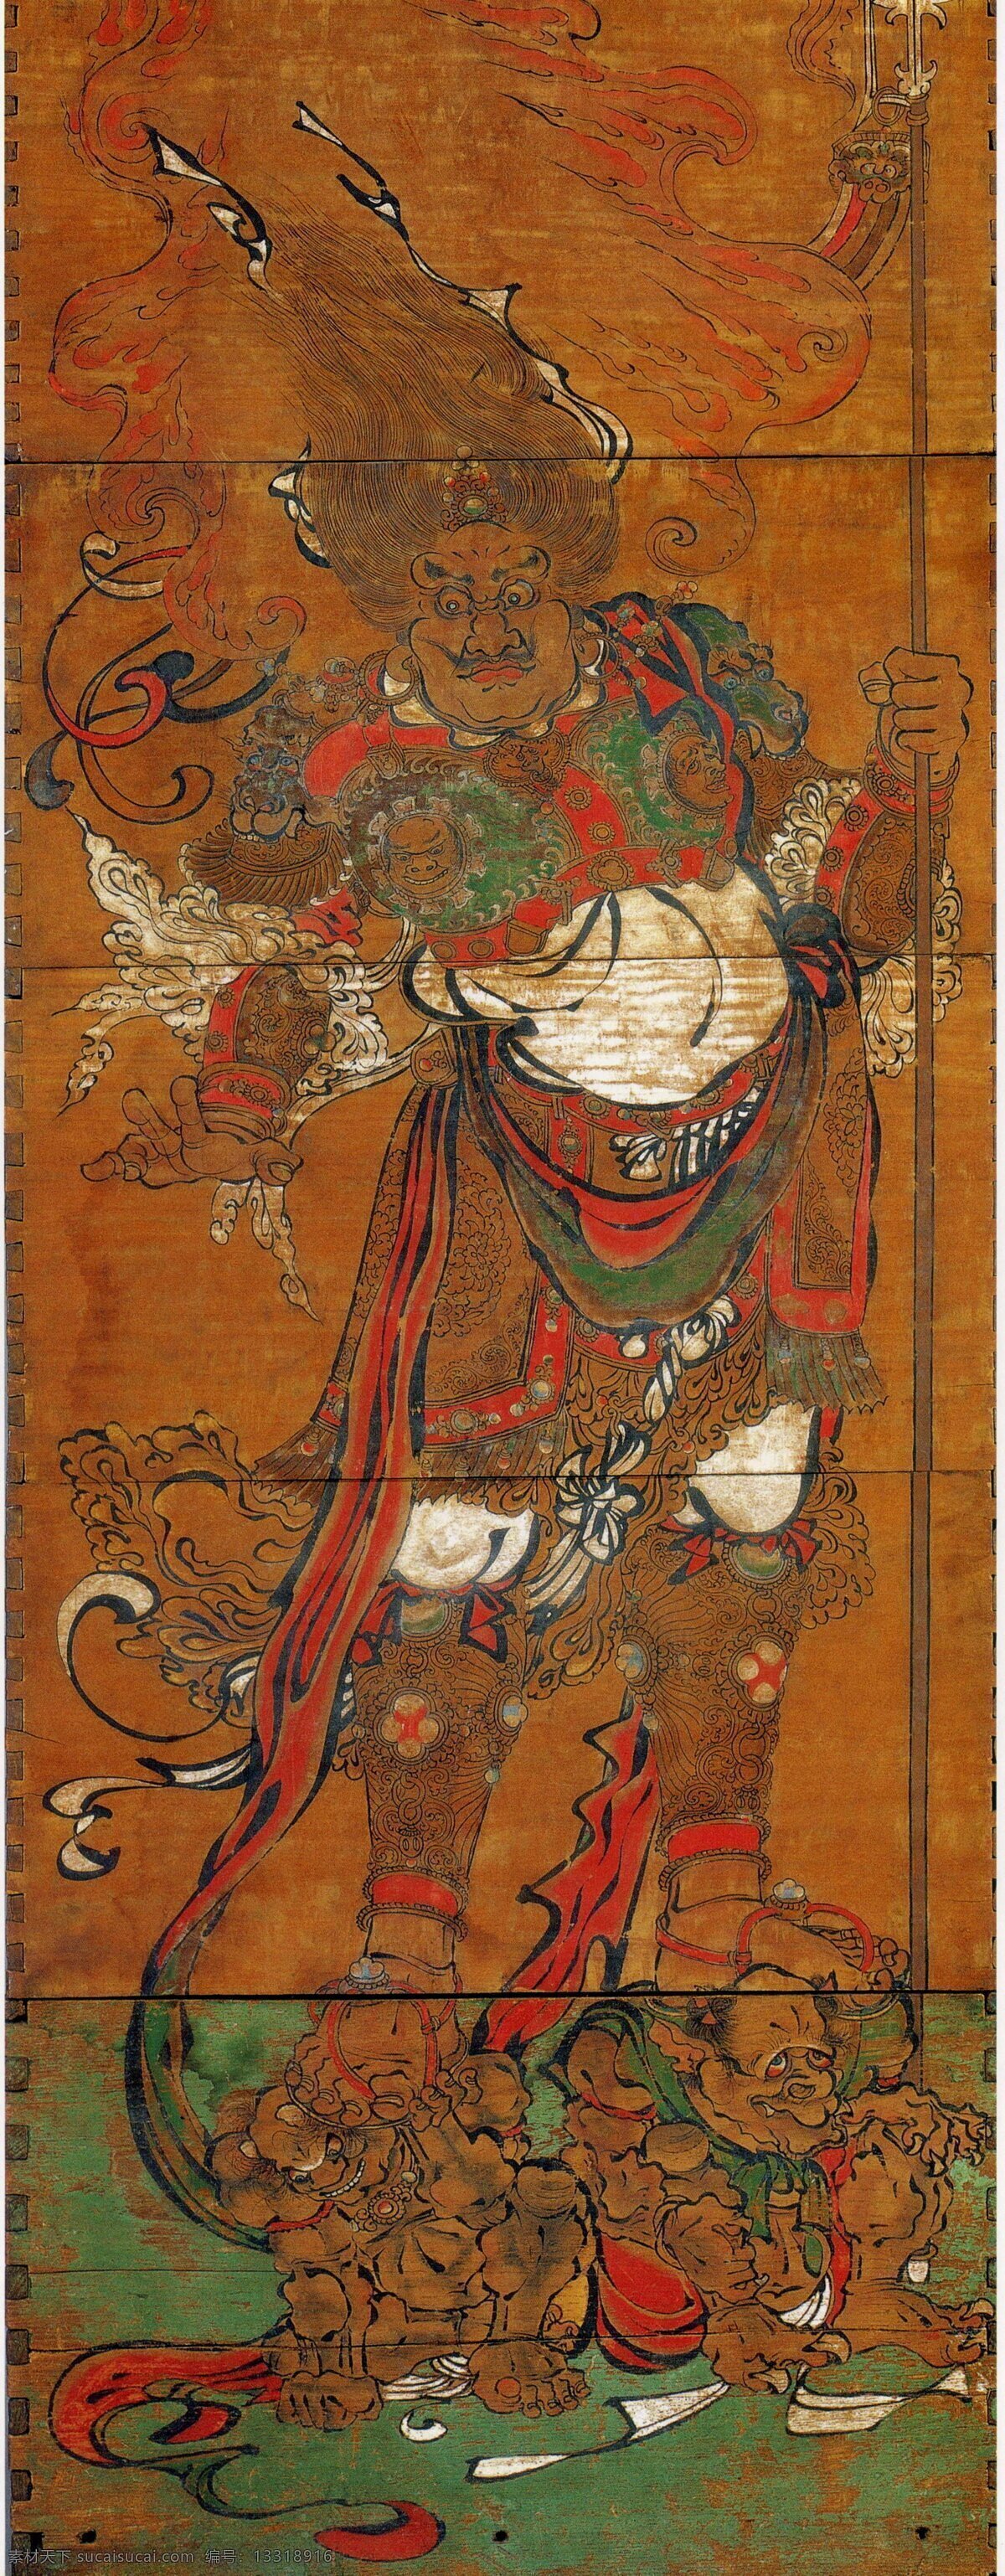 天王 壁画 苏州 文化艺术 宗教信仰 天王像 瑞光塔 云岩寺